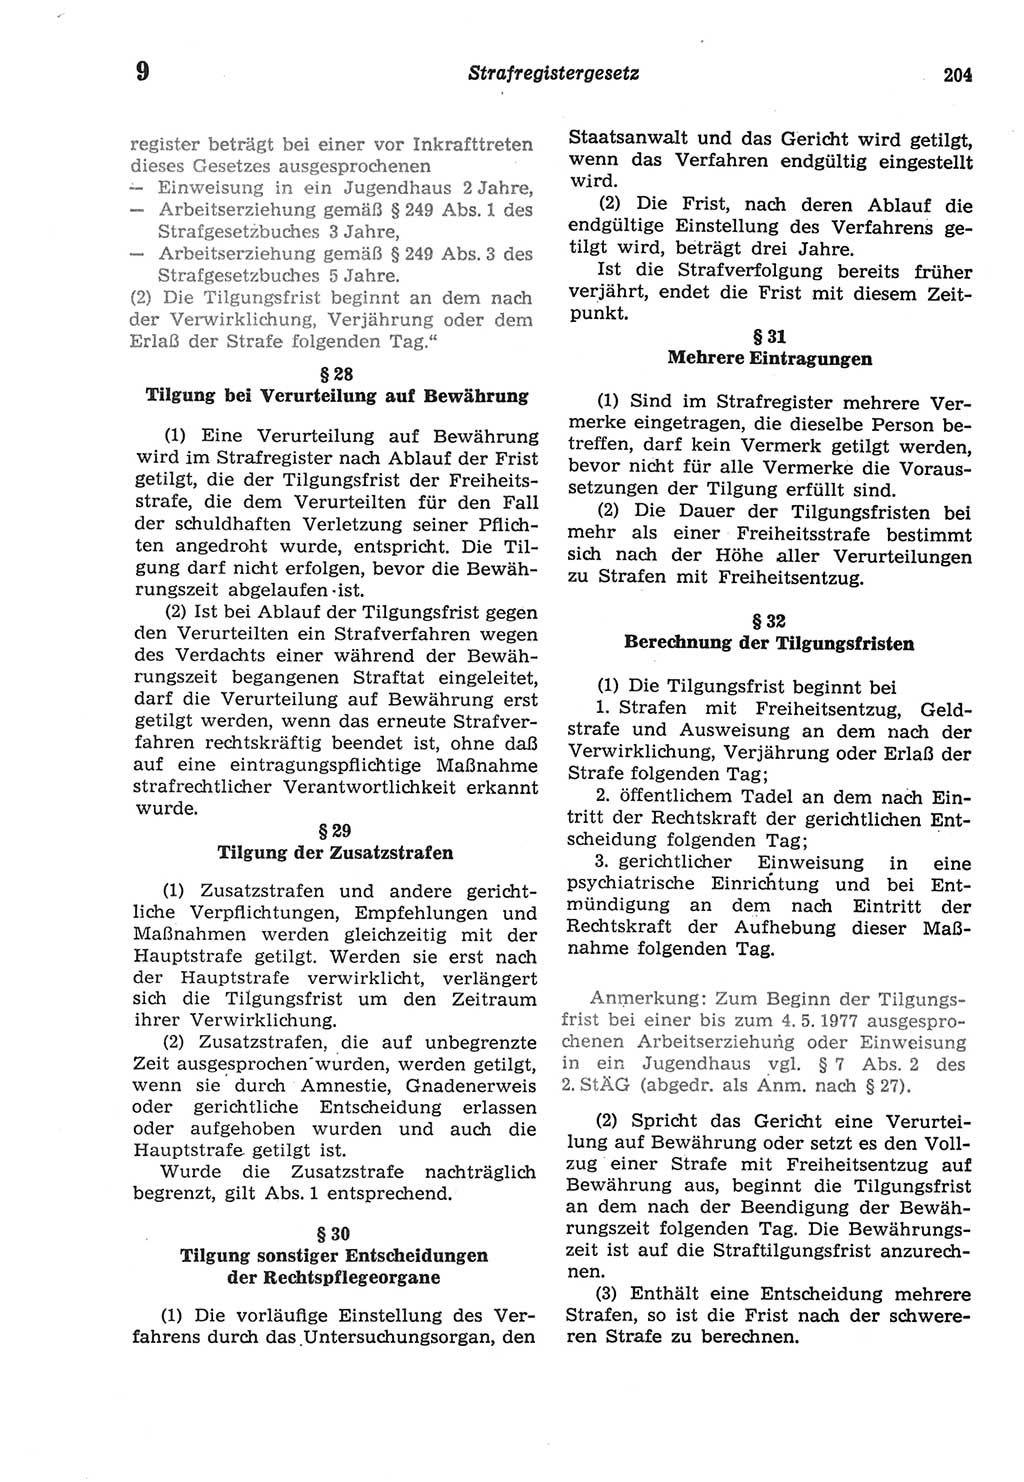 Strafprozeßordnung (StPO) der Deutschen Demokratischen Republik (DDR) sowie angrenzende Gesetze und Bestimmungen 1977, Seite 204 (StPO DDR Ges. Best. 1977, S. 204)